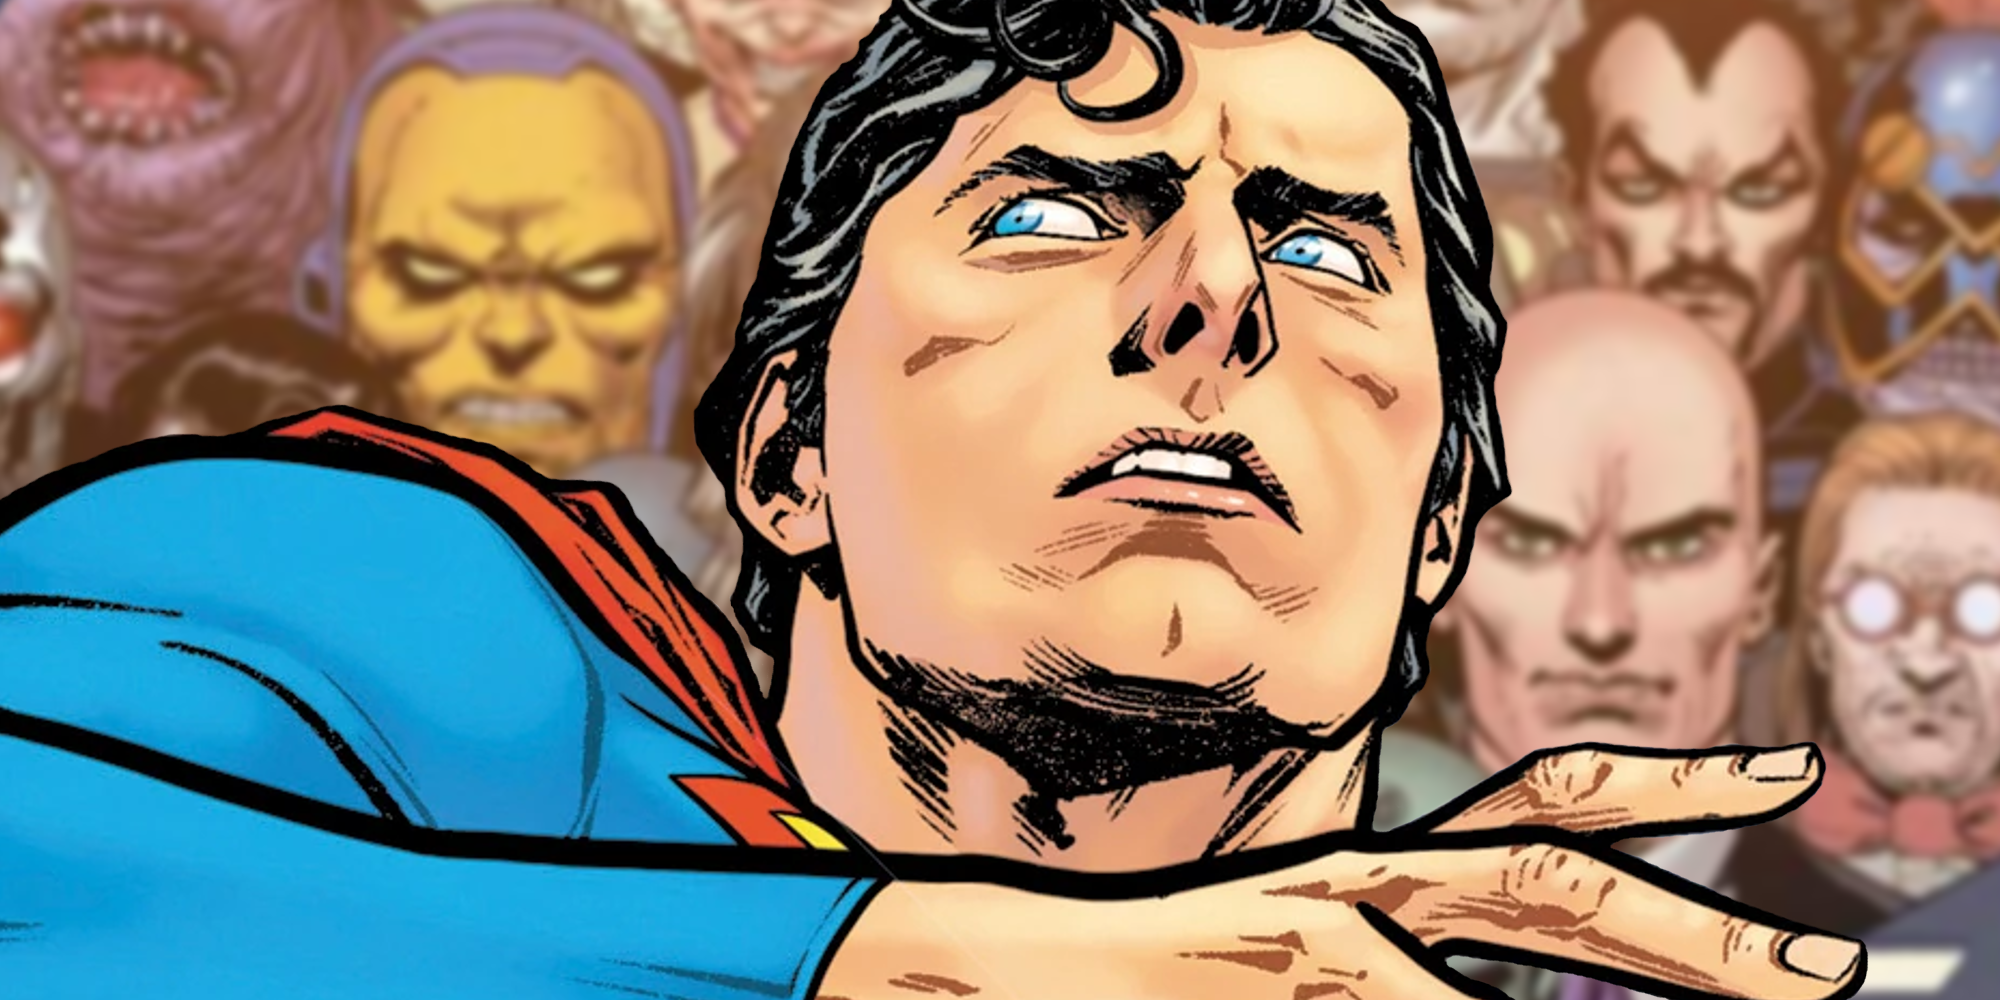 Superman Fan Art demuestra que los enemigos están equivocados acerca de sus villanos